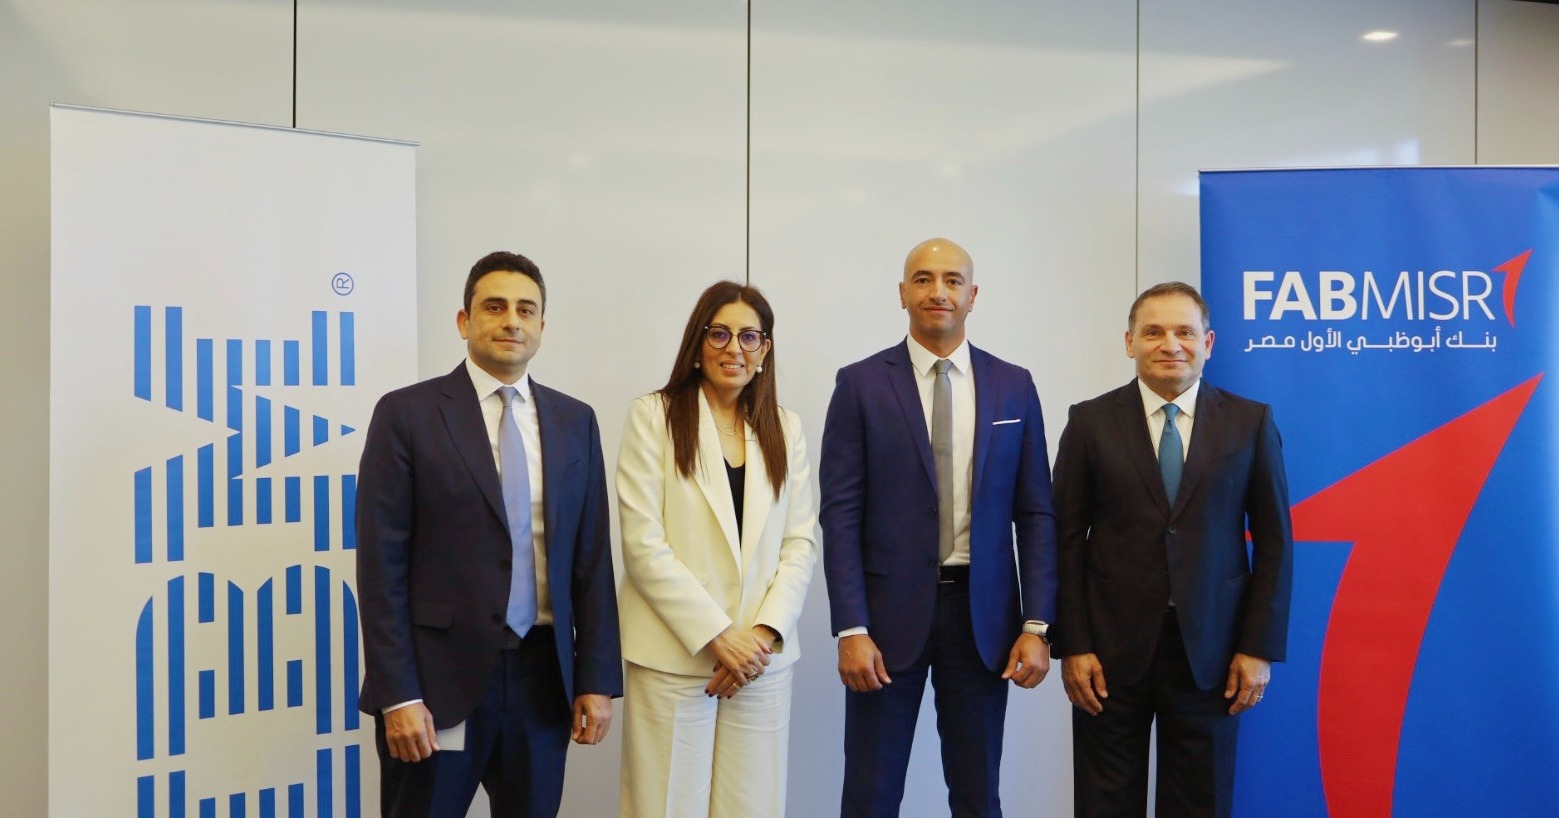 شركةIBM  تتعاون مع بنك أبوظبي الأول مصر لتعزيز التجربة المصرفية في مصر باستخدام الذكاء الاصطناعي